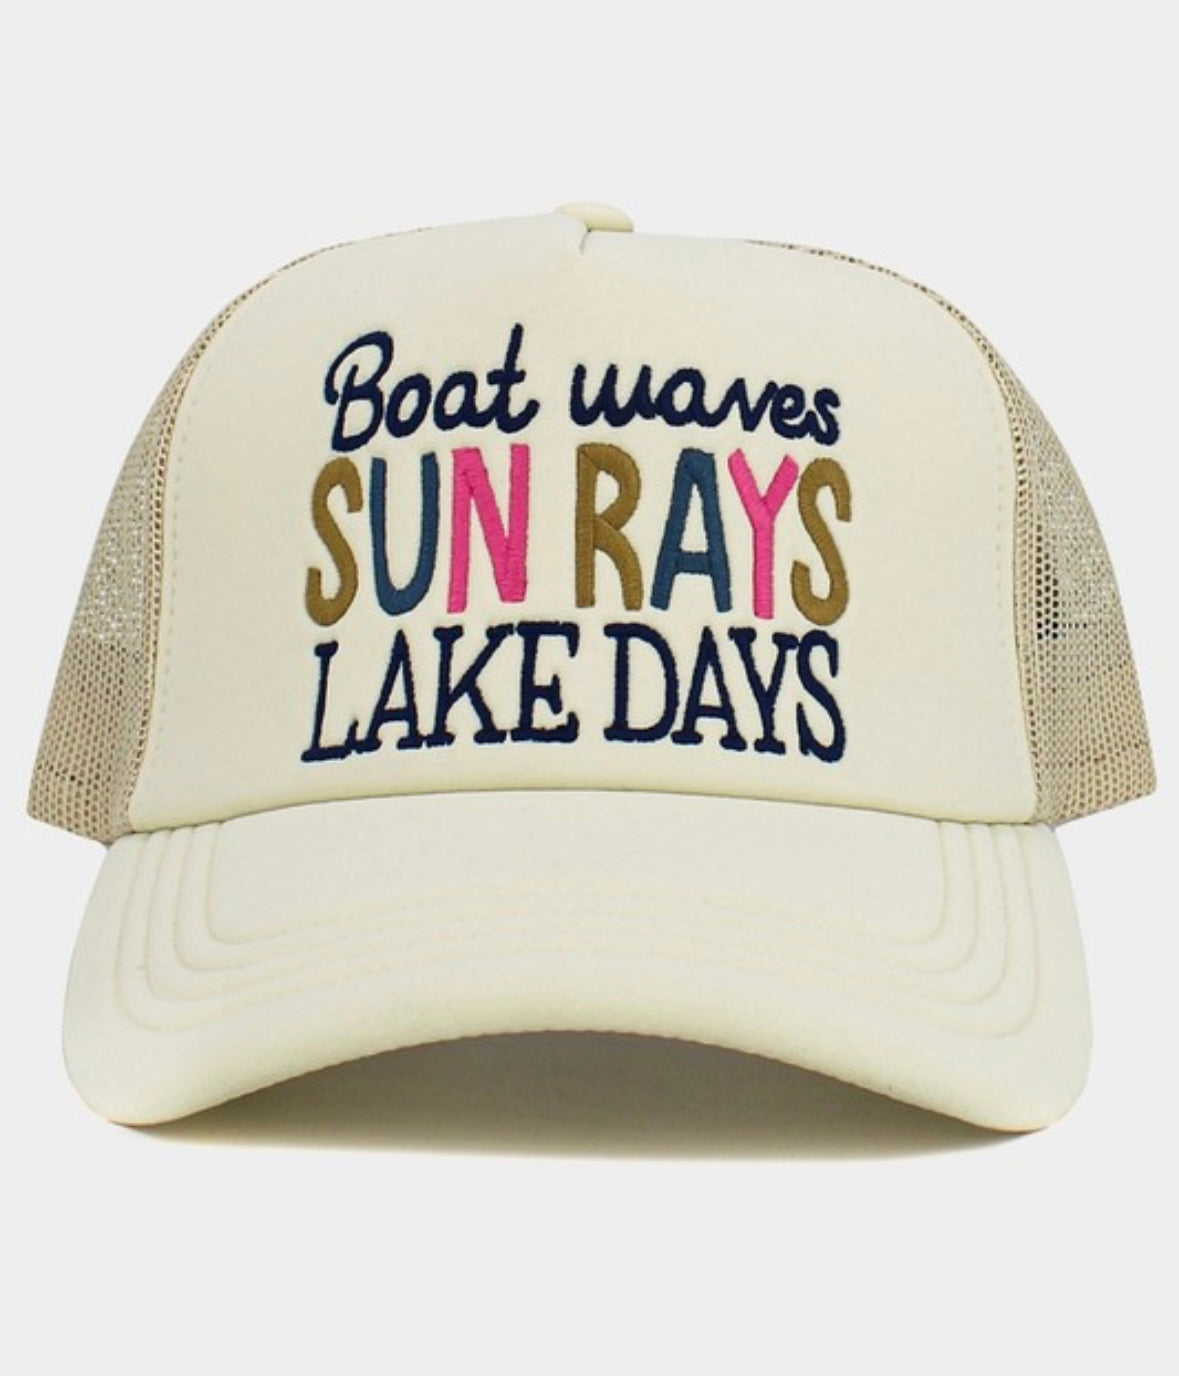 Lake Days Ball Cap